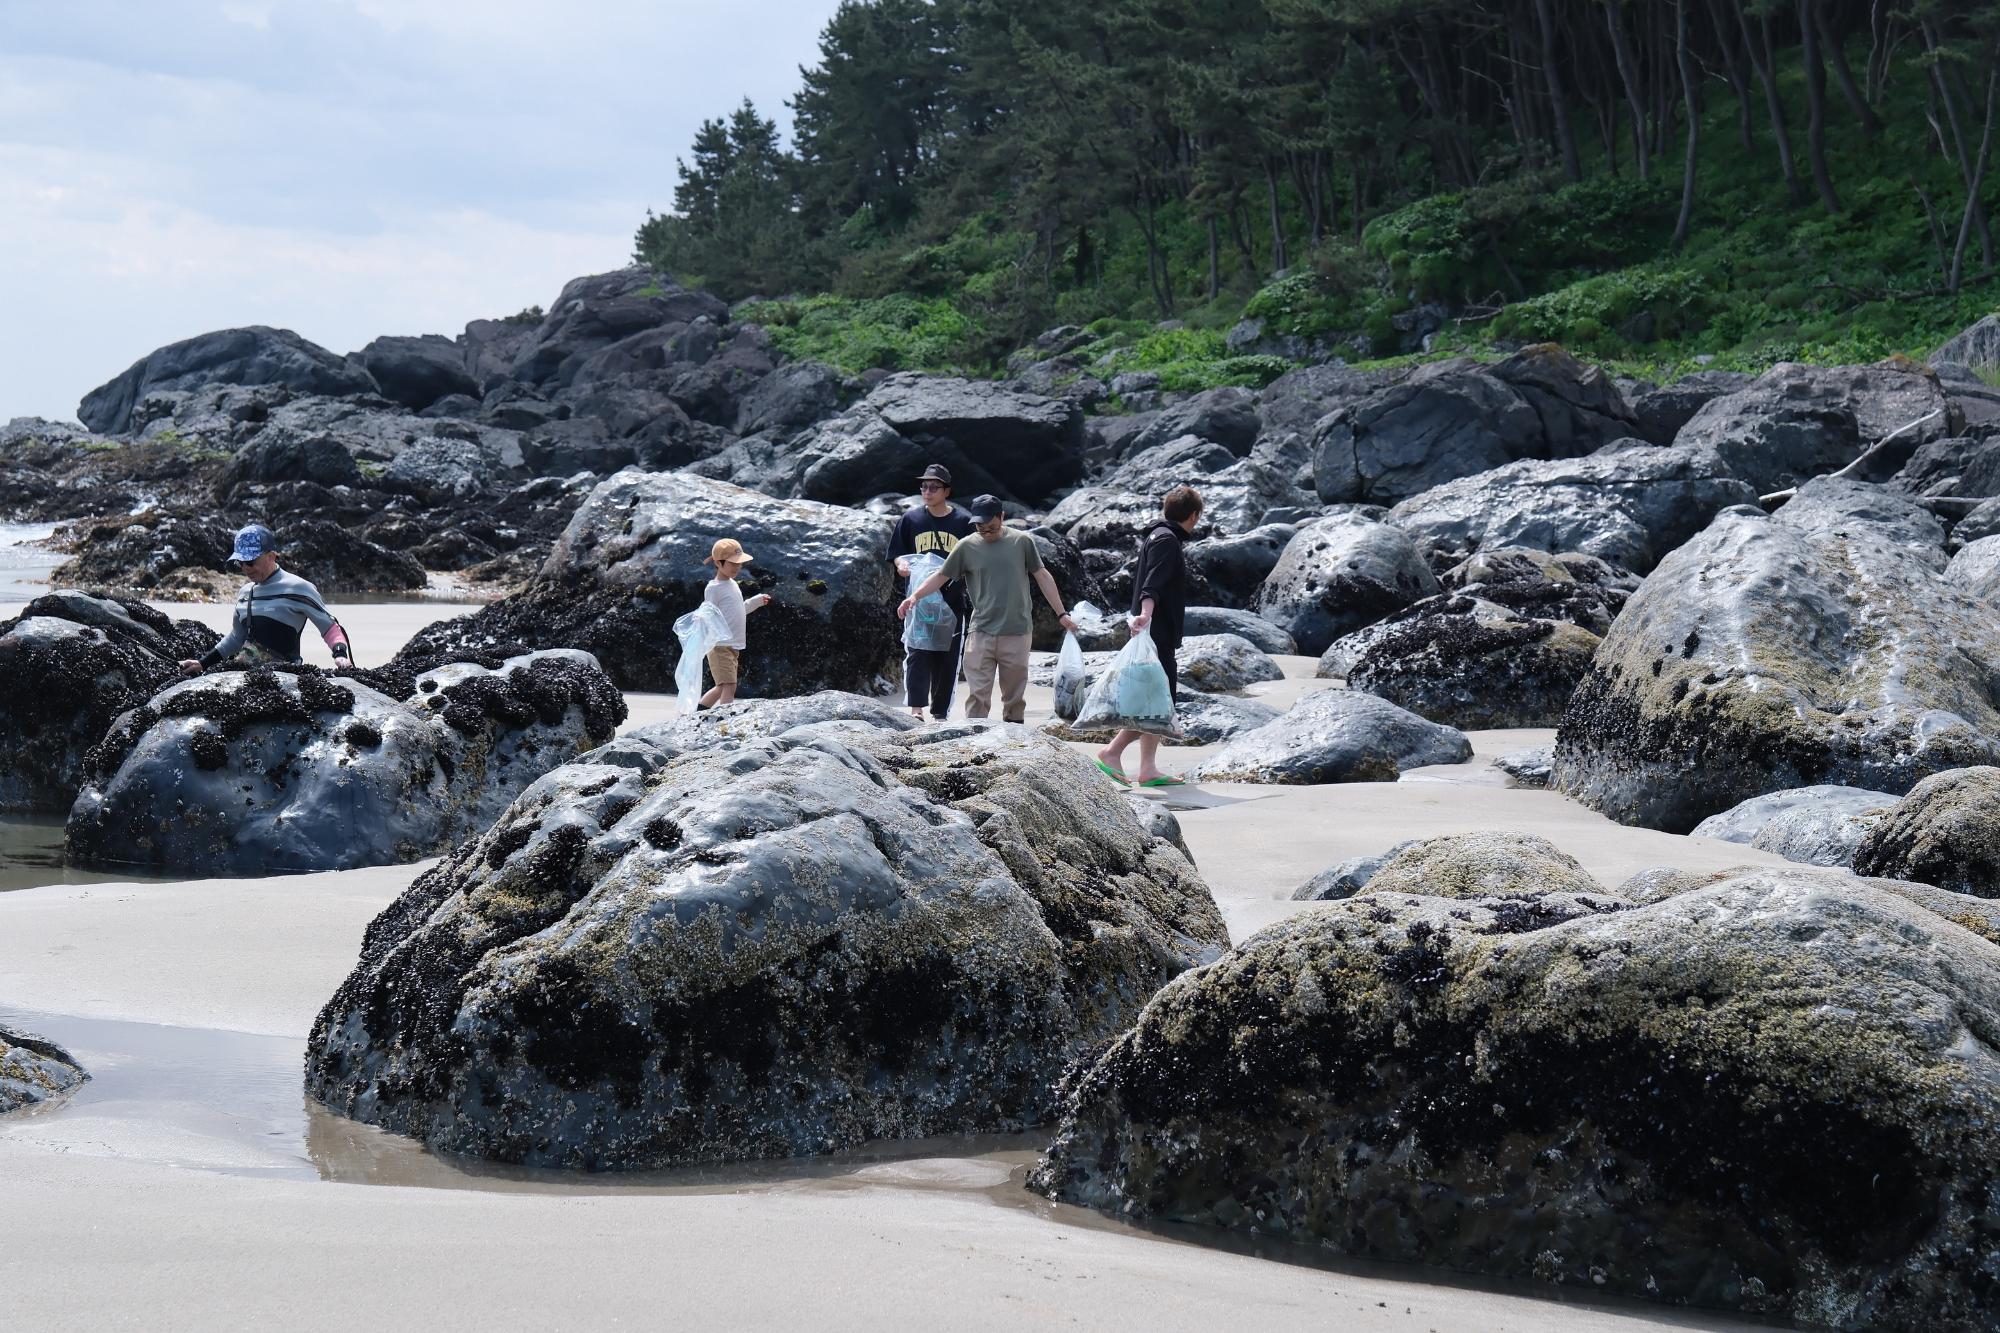 青空の下、大きな岩のある波打ち際でごみを拾っている5人の写真